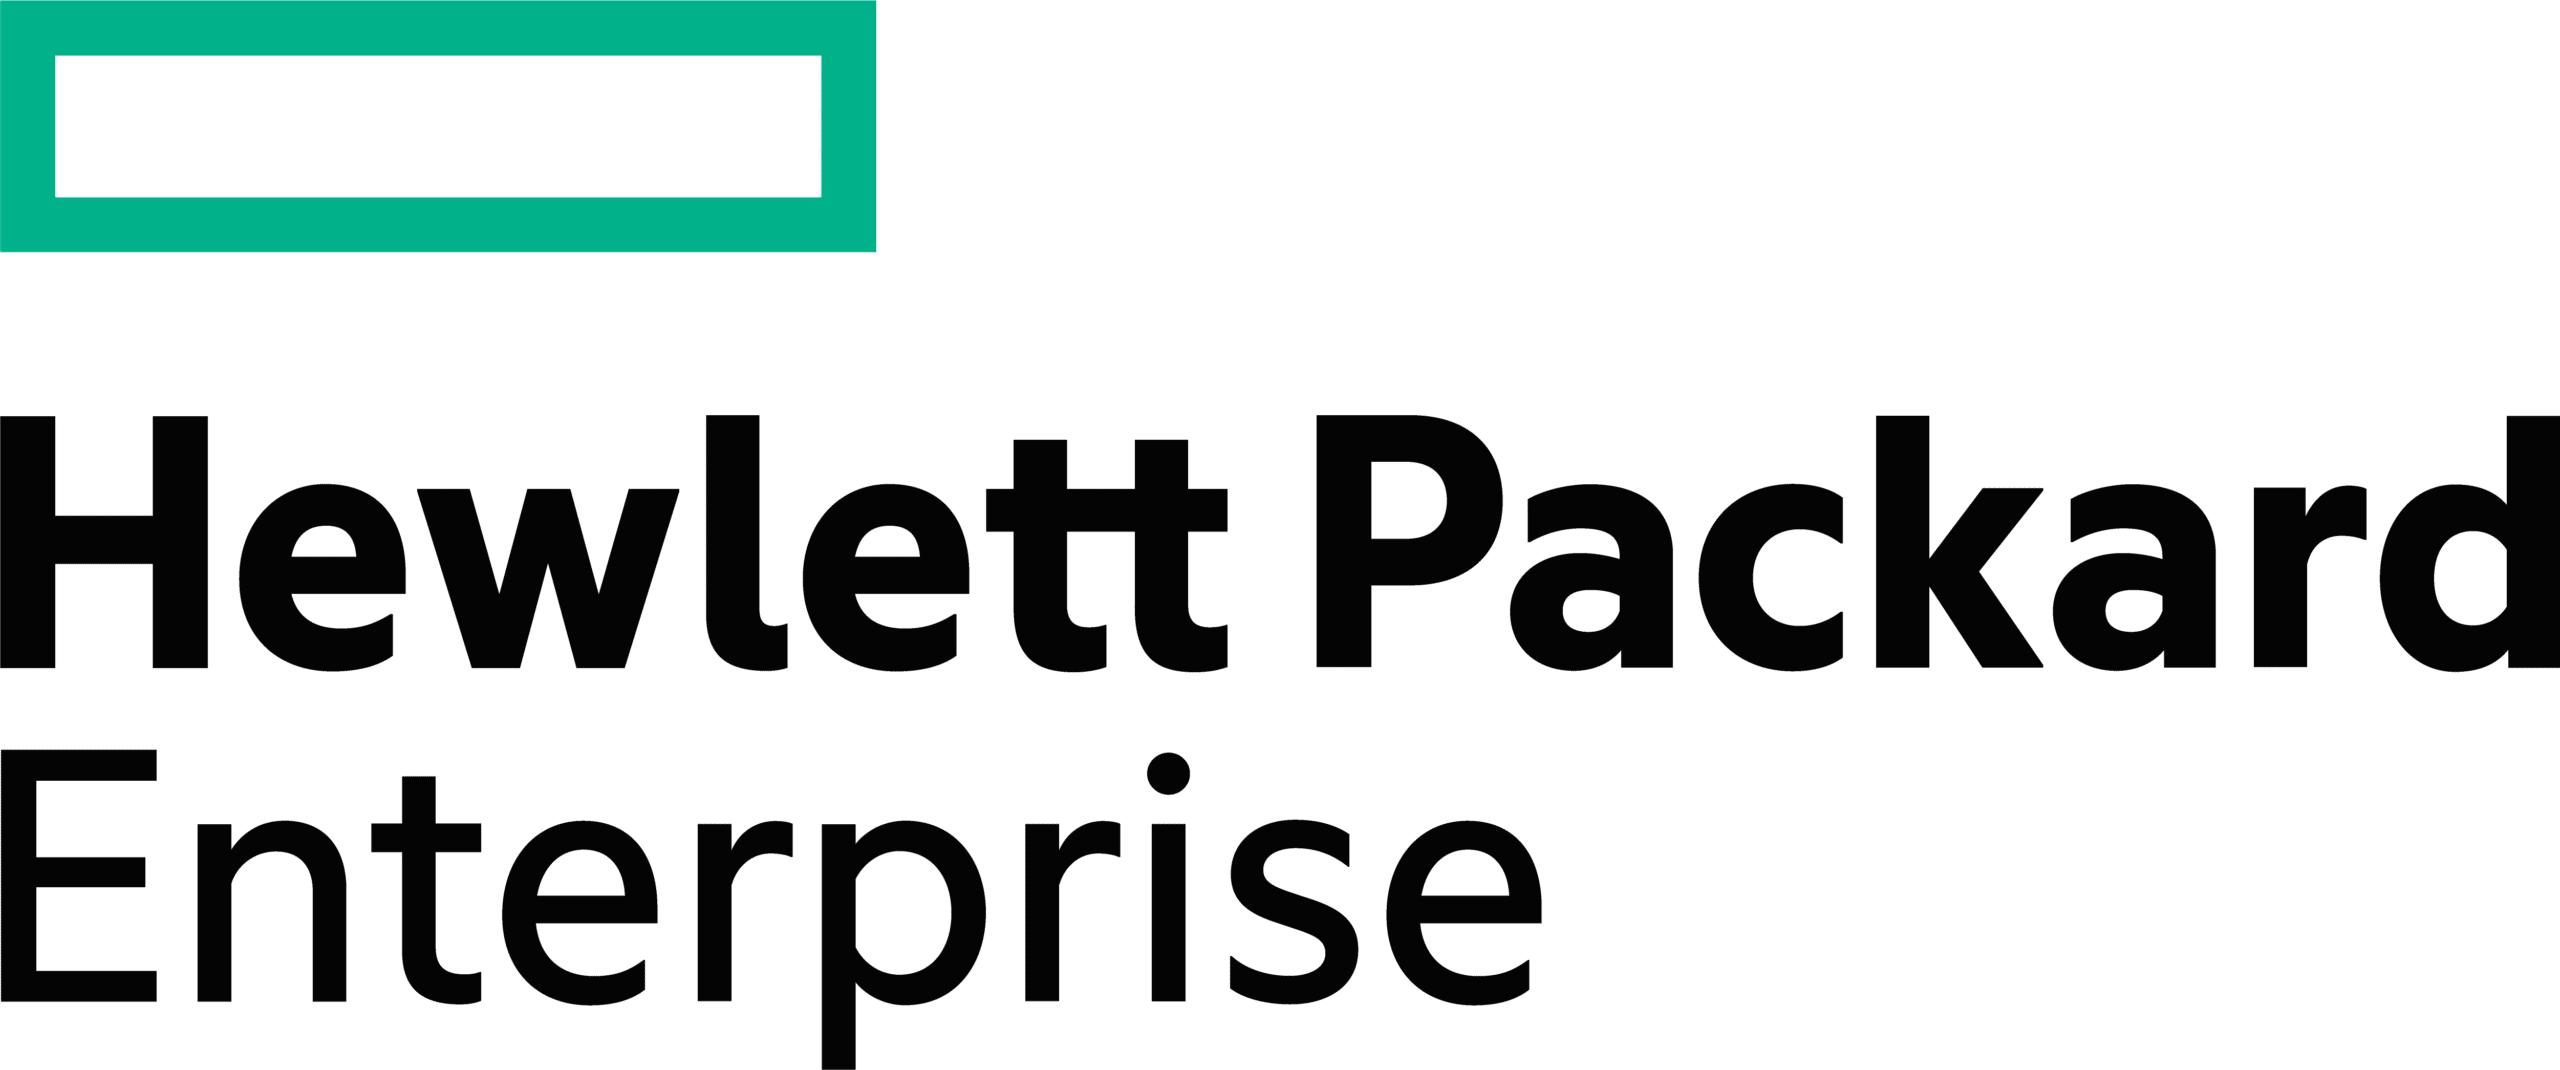 Hewlett_Packard_Enterprise_logo (1)-01